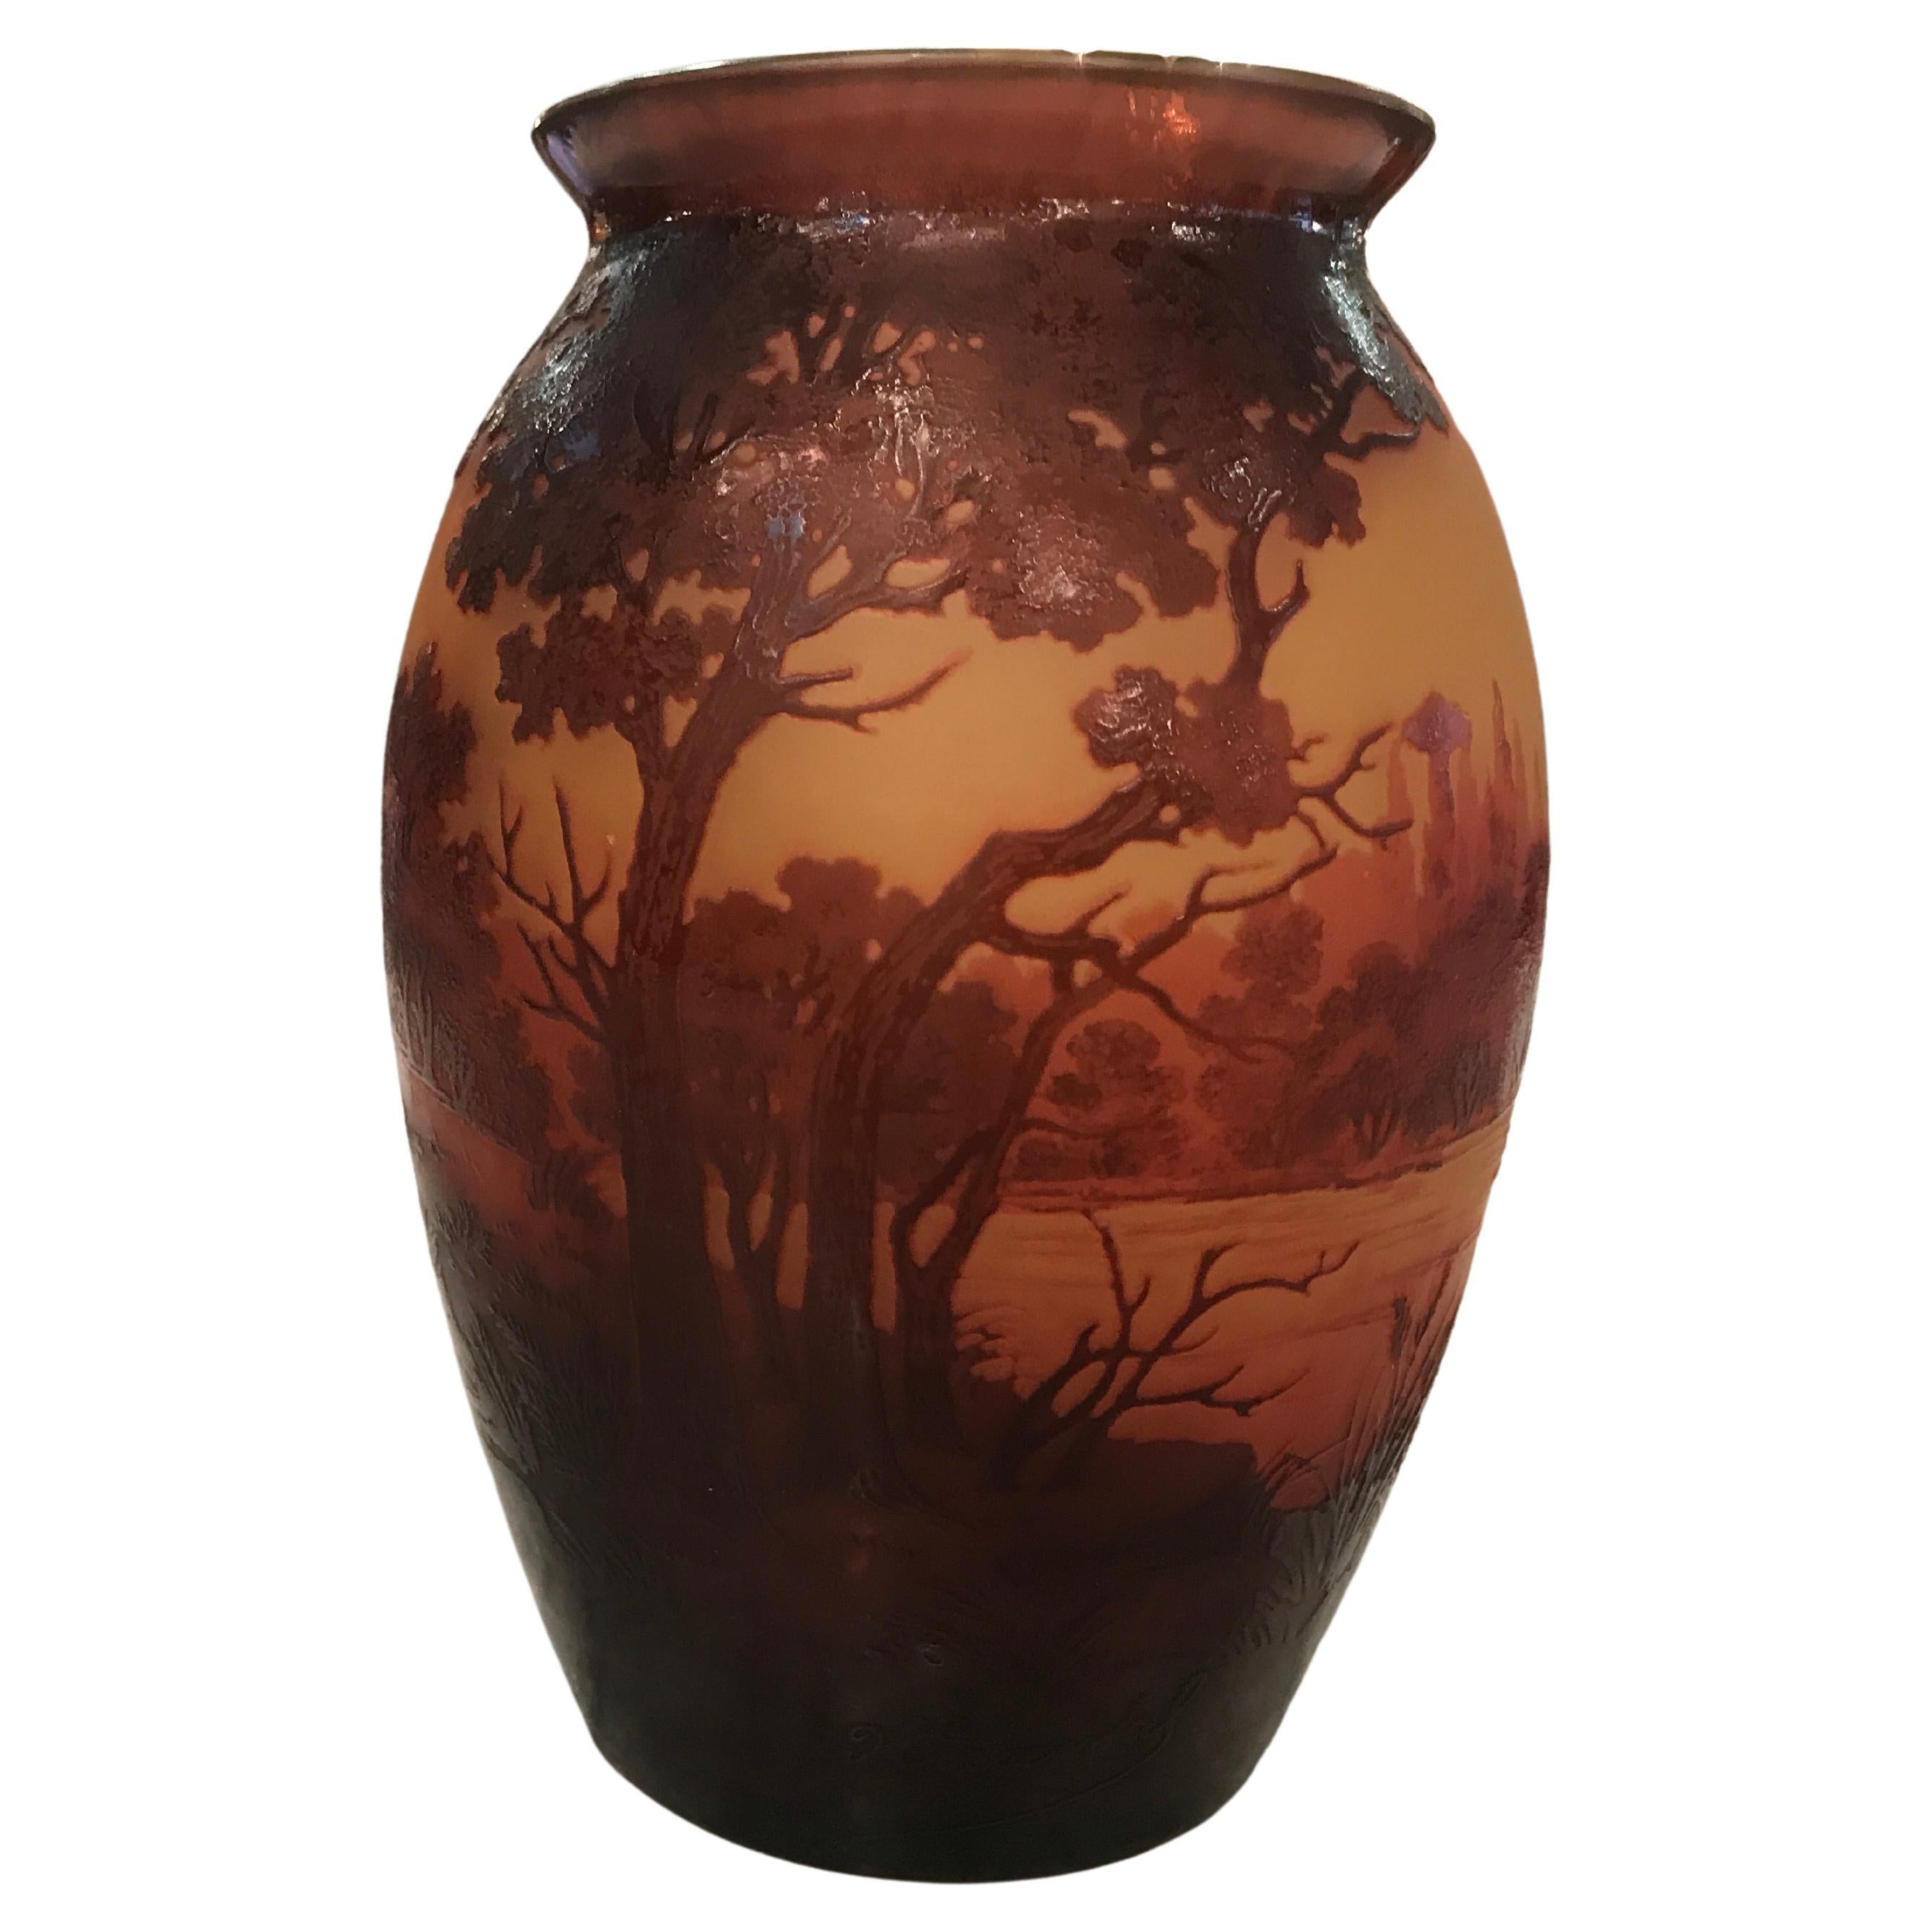 Vase D argental (French) - Style: Jugendstil, Art Nouveau, Liberty, DET For Sale